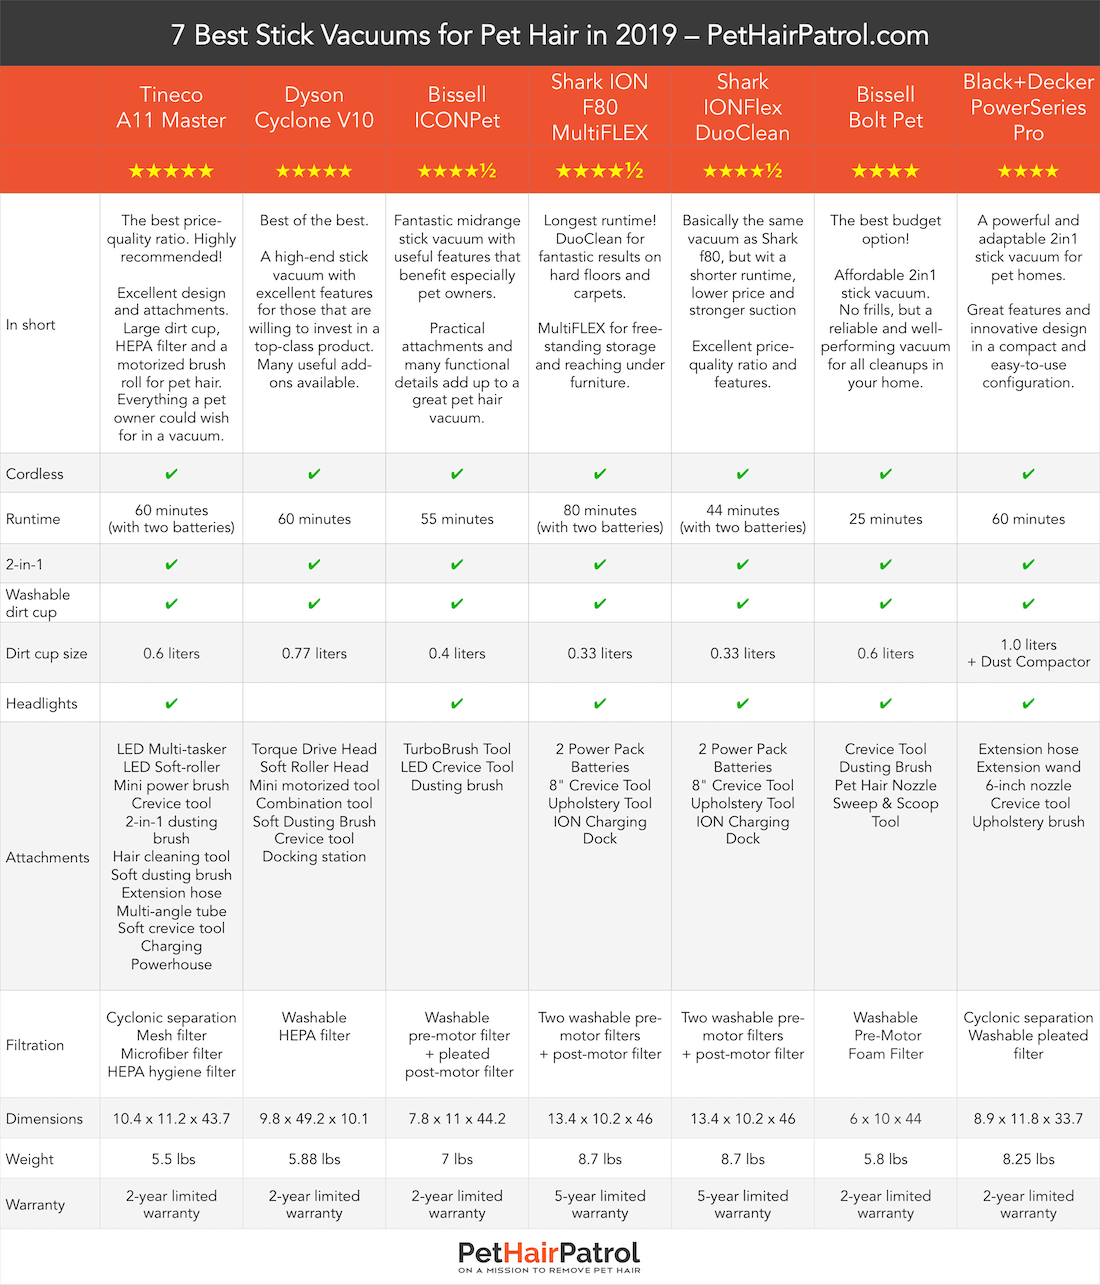 Dyson Cord Free Comparison Chart